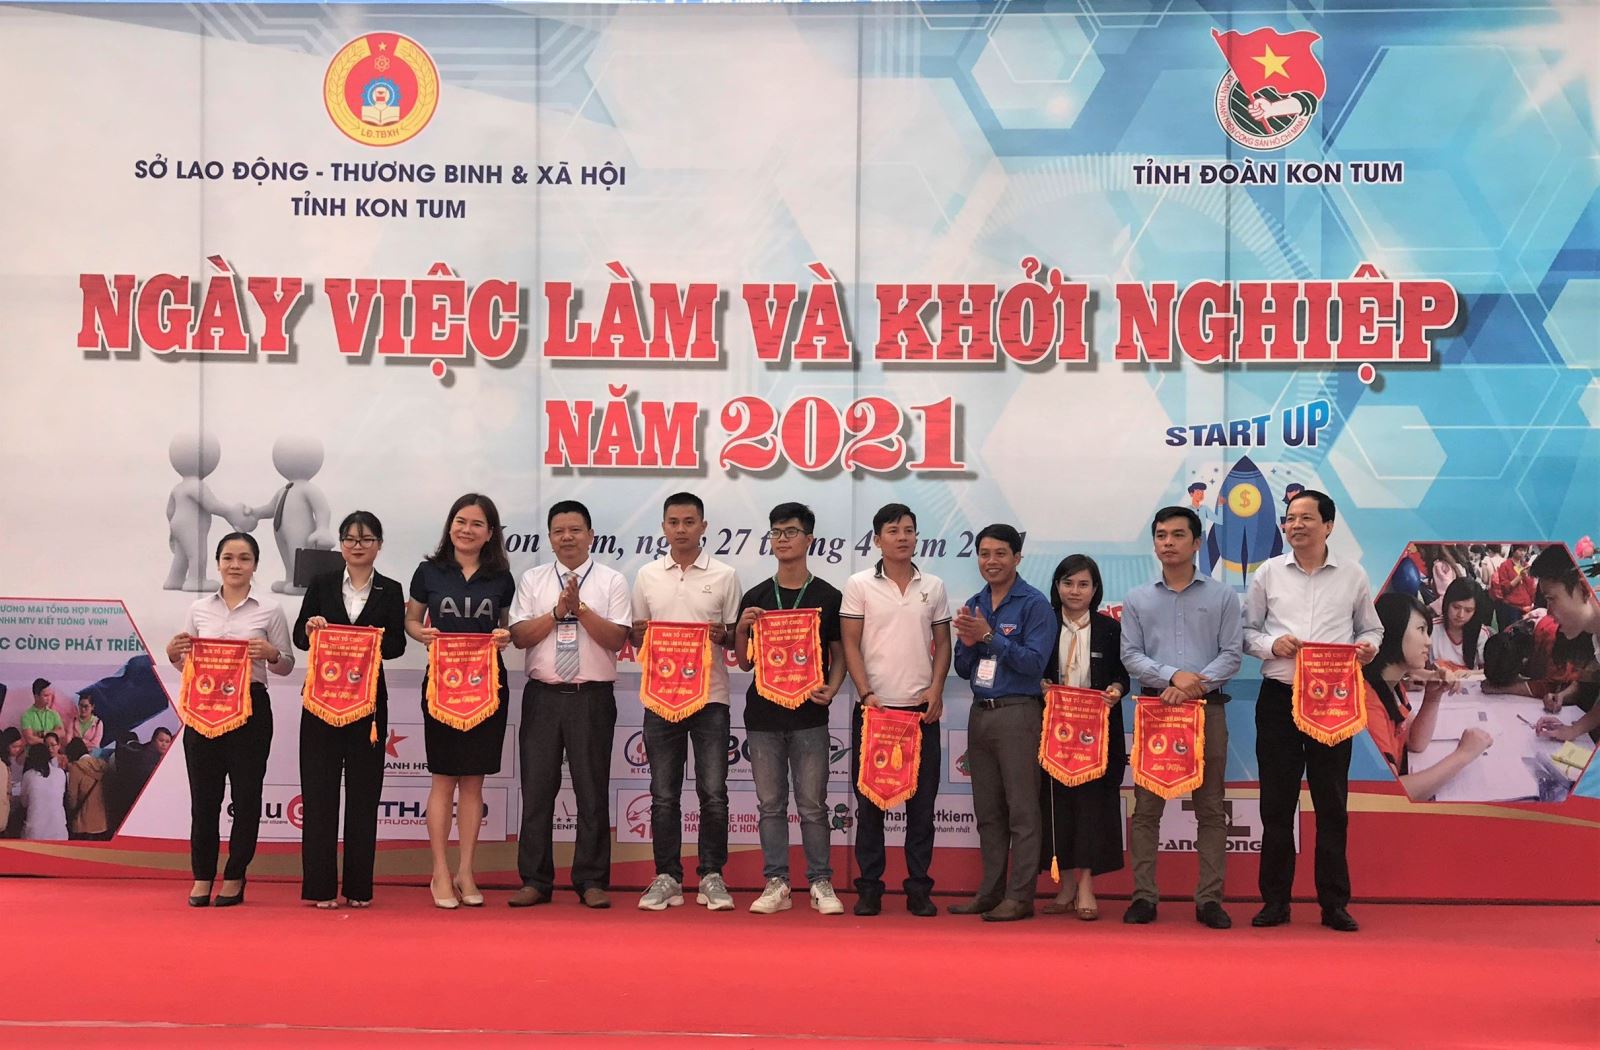 Ngày việc làm và Khởi nghiệp tỉnh Kon Tum năm 2021